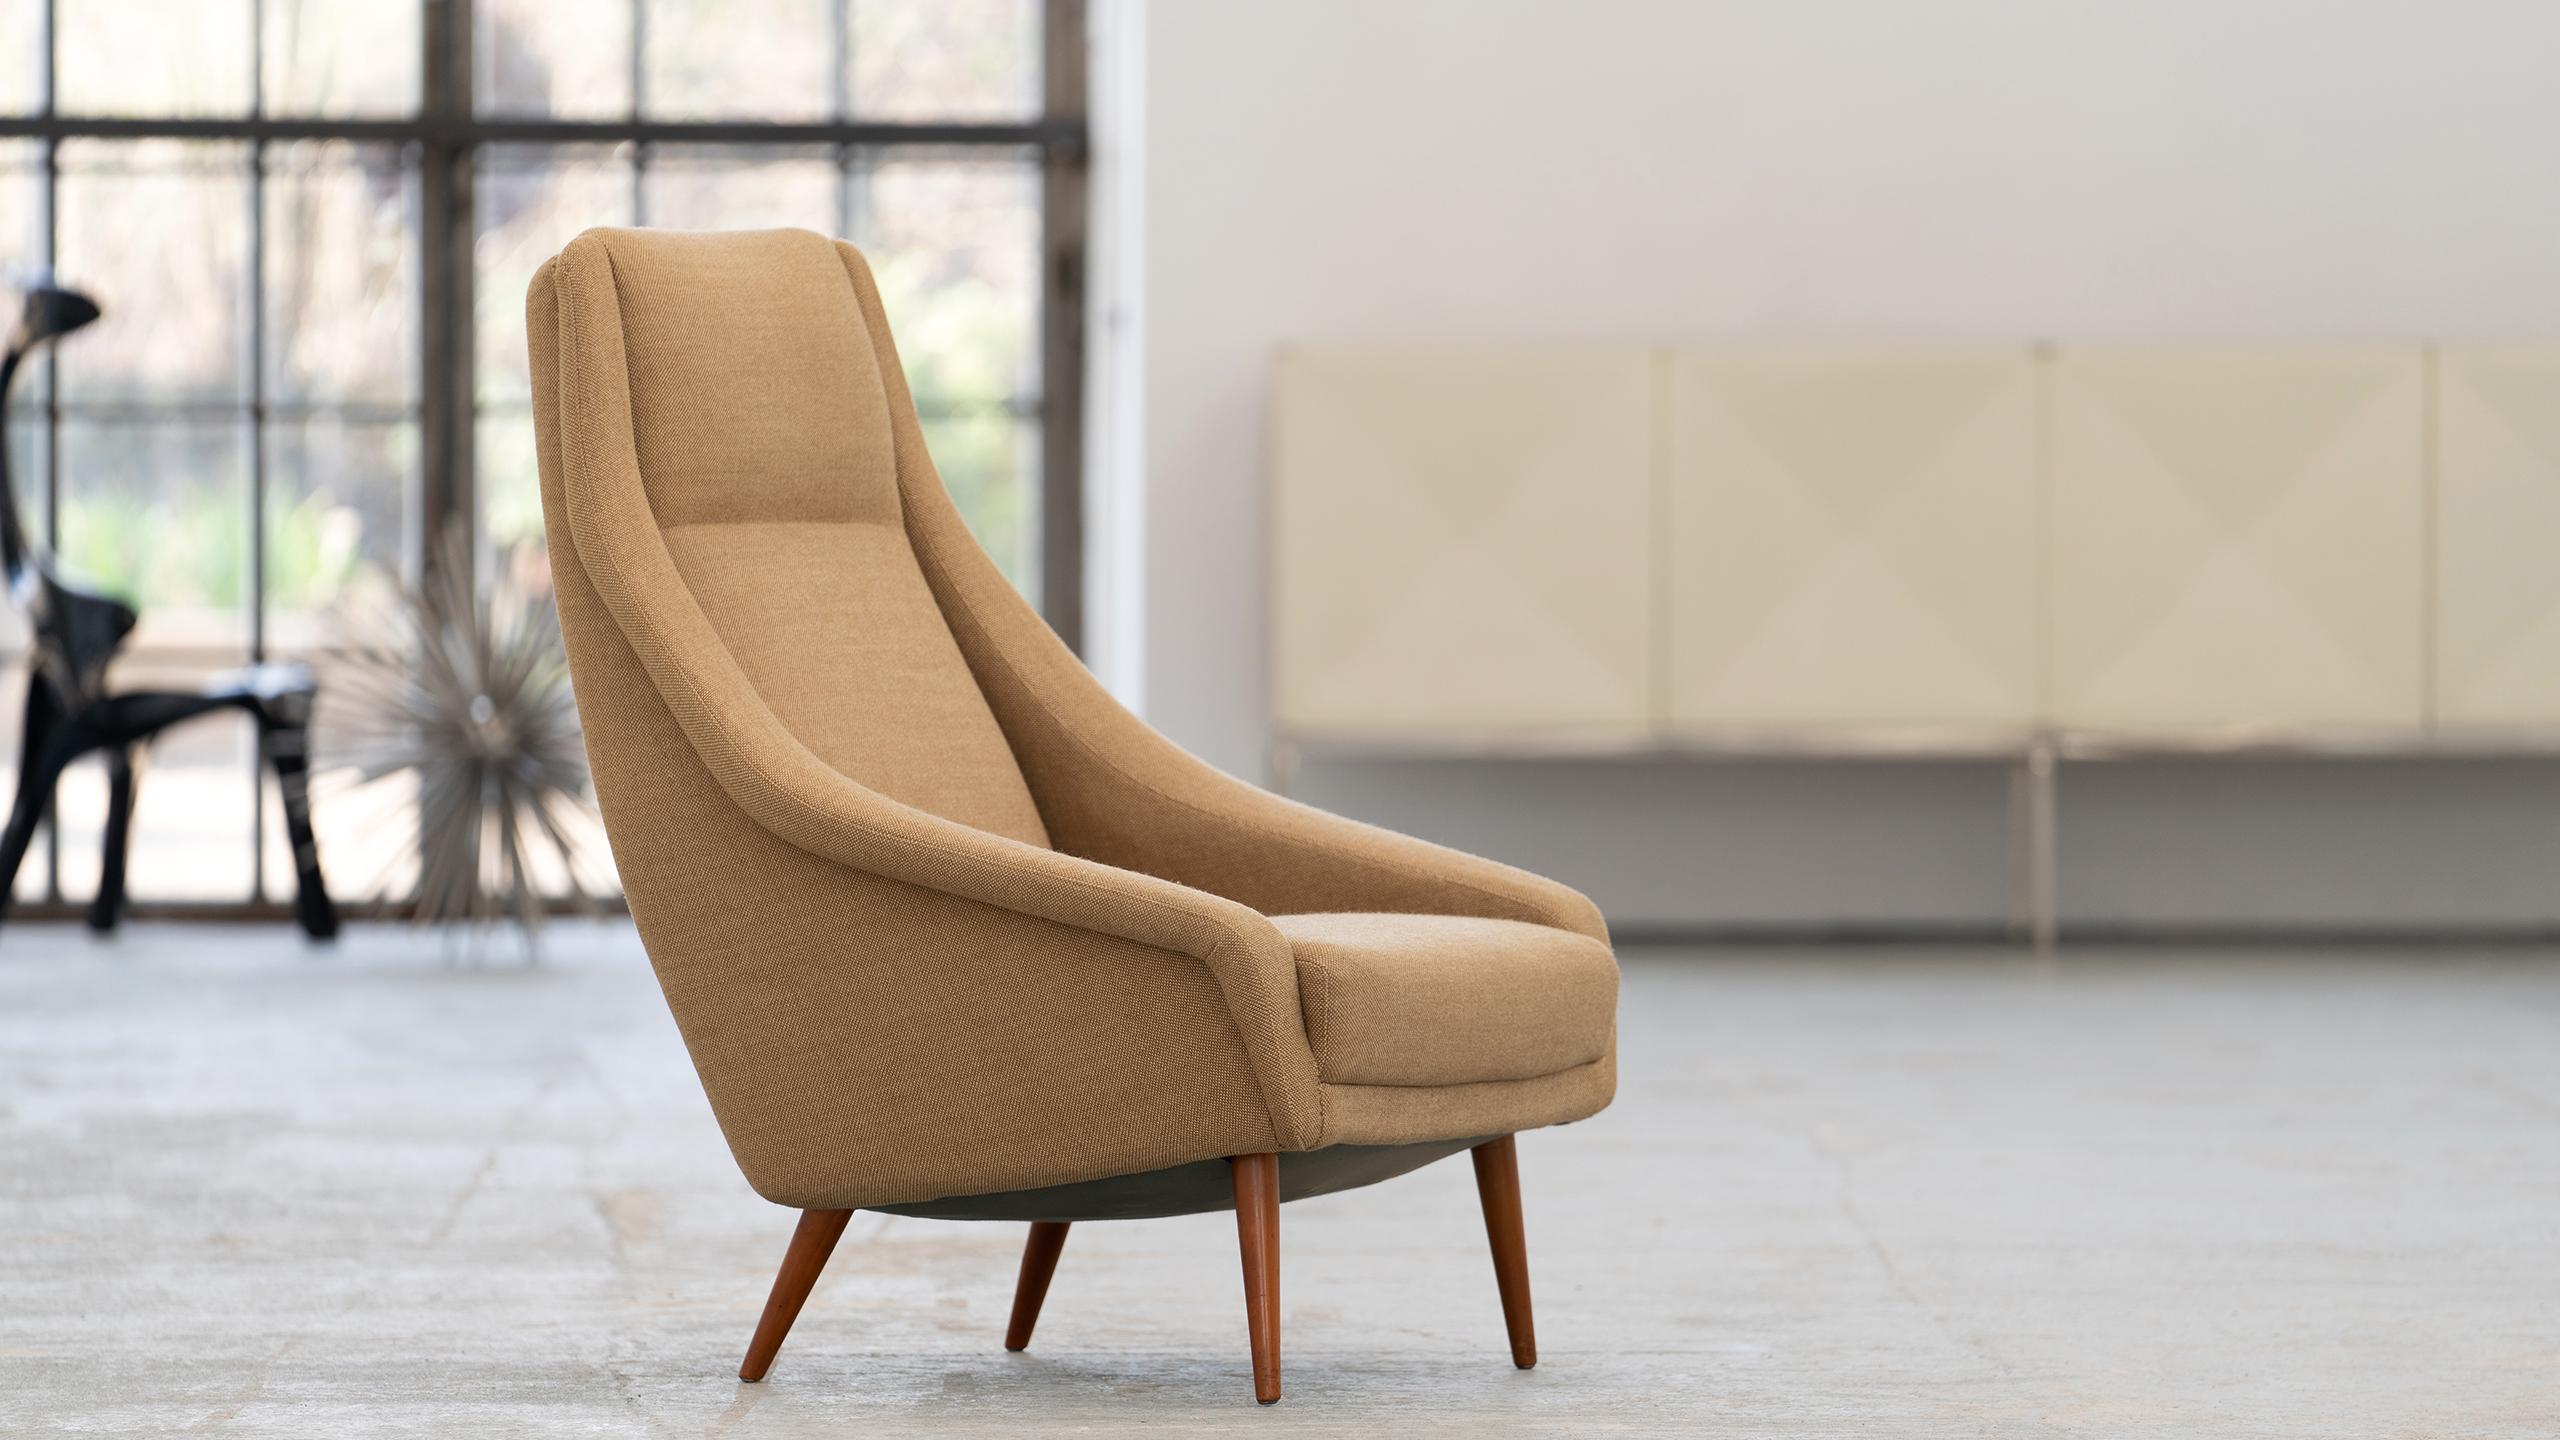 Hochlehner-Sessel in Hallingdal, gekauft 1965, Dänemark

Unglaublich bequemer und sehr gut erhaltener Highback Lounge Chair - er wurde 1965 in Dänemark gekauft. 
Der Stuhl stammt aus einer Industrievilla (siehe Foto), für deren Möbel alle Stücke